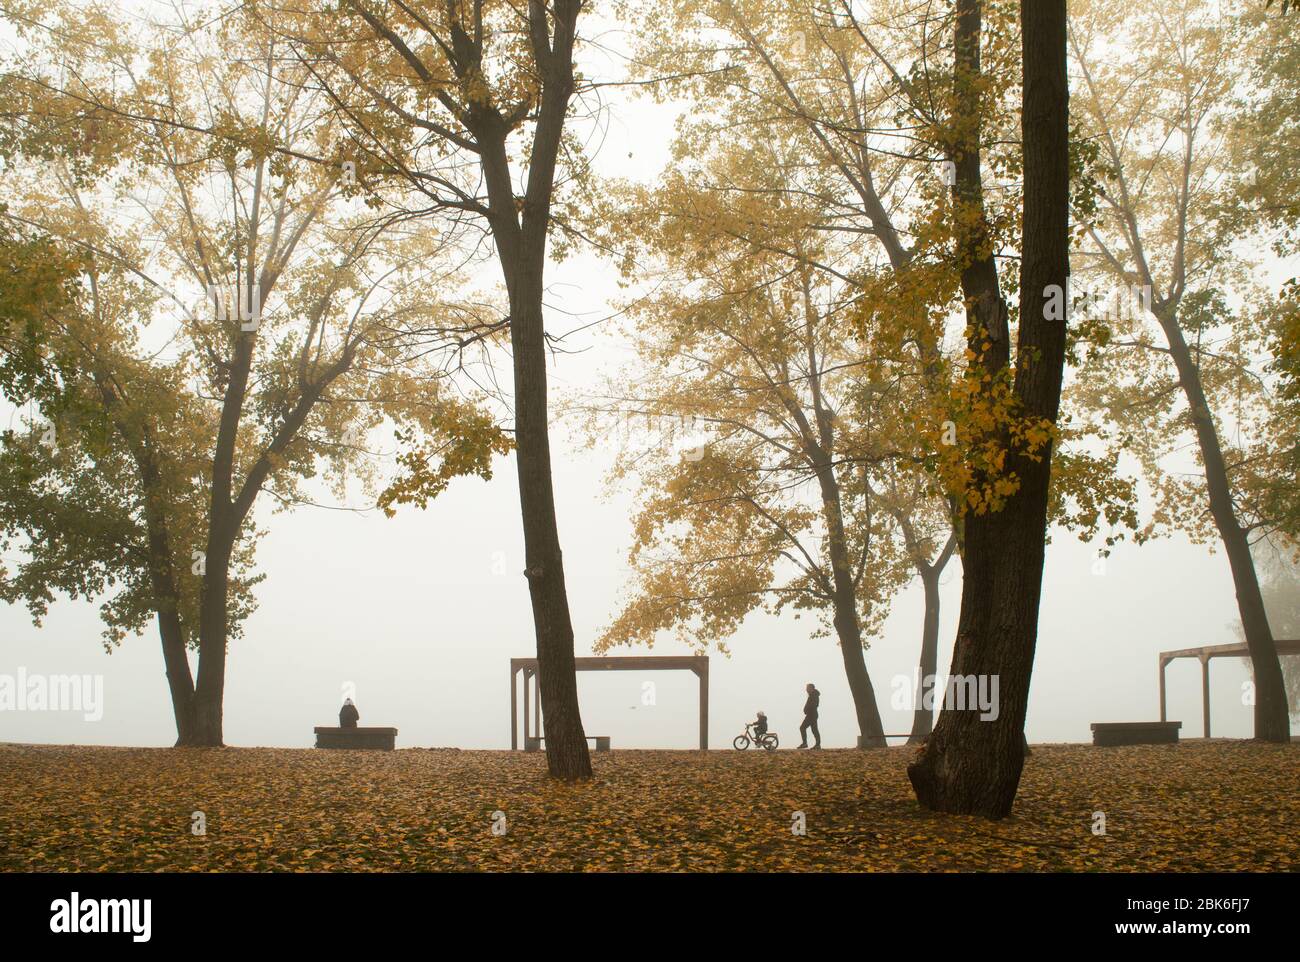 Golden automne avec des feuilles jaunes, orange, vertes sur les arbres. La rive de la rivière Dnieper. La personne est assise sur la banquette, l'enfant est assis sur la th Banque D'Images